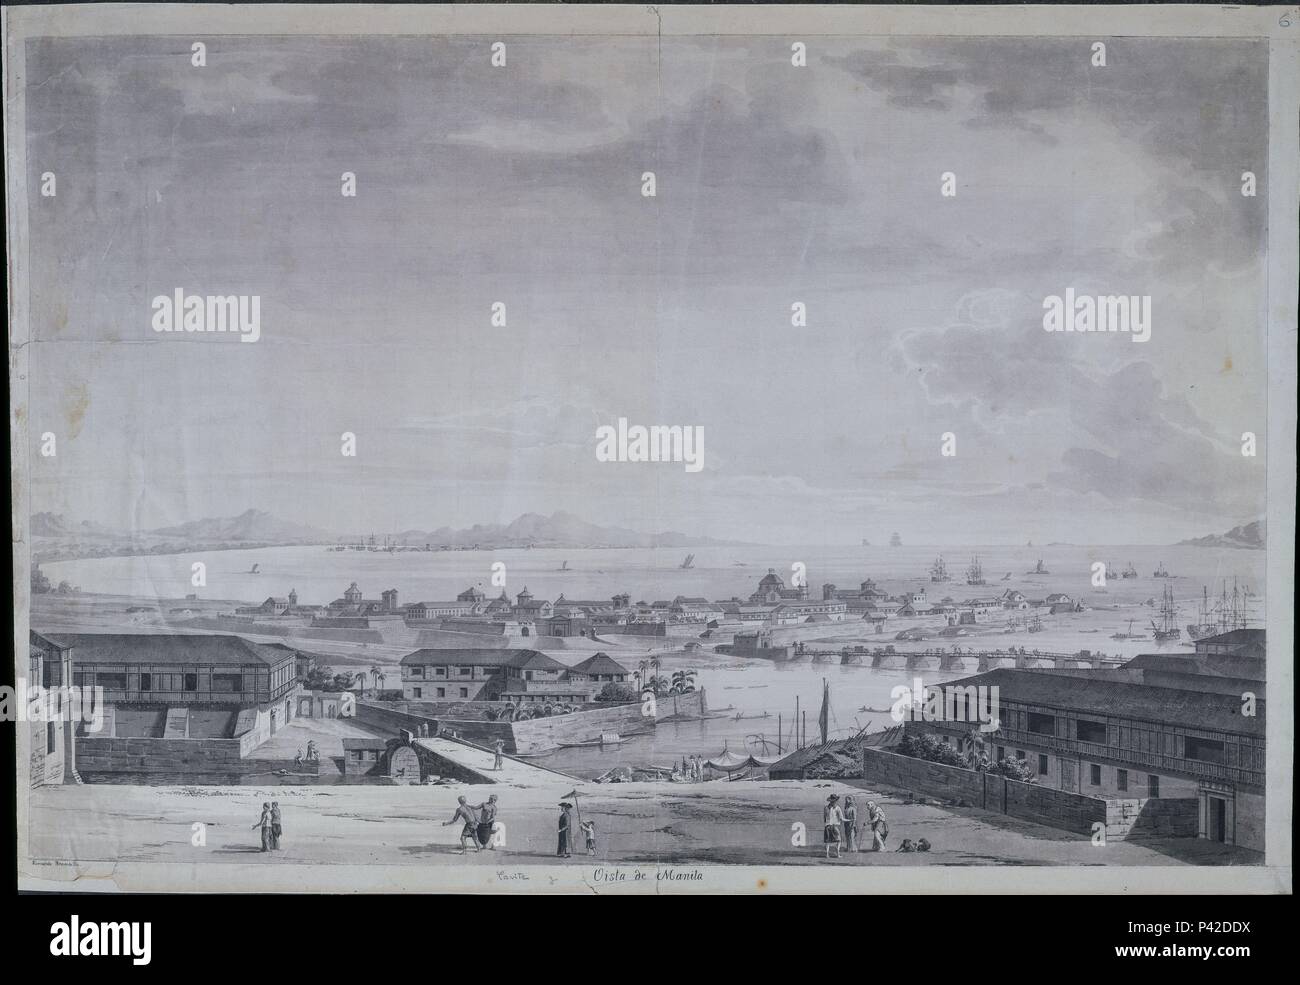 VISTA DE MANILA - PANORAMICA CON LA BAHIA - EXPEDICION MALASPINA (1789-1794). Autore: Fernando Brambila (1763-1832). Posizione: MUSEO NAVAL / MINISTERIO DE MARINA, MADRID, Spagna. Foto Stock